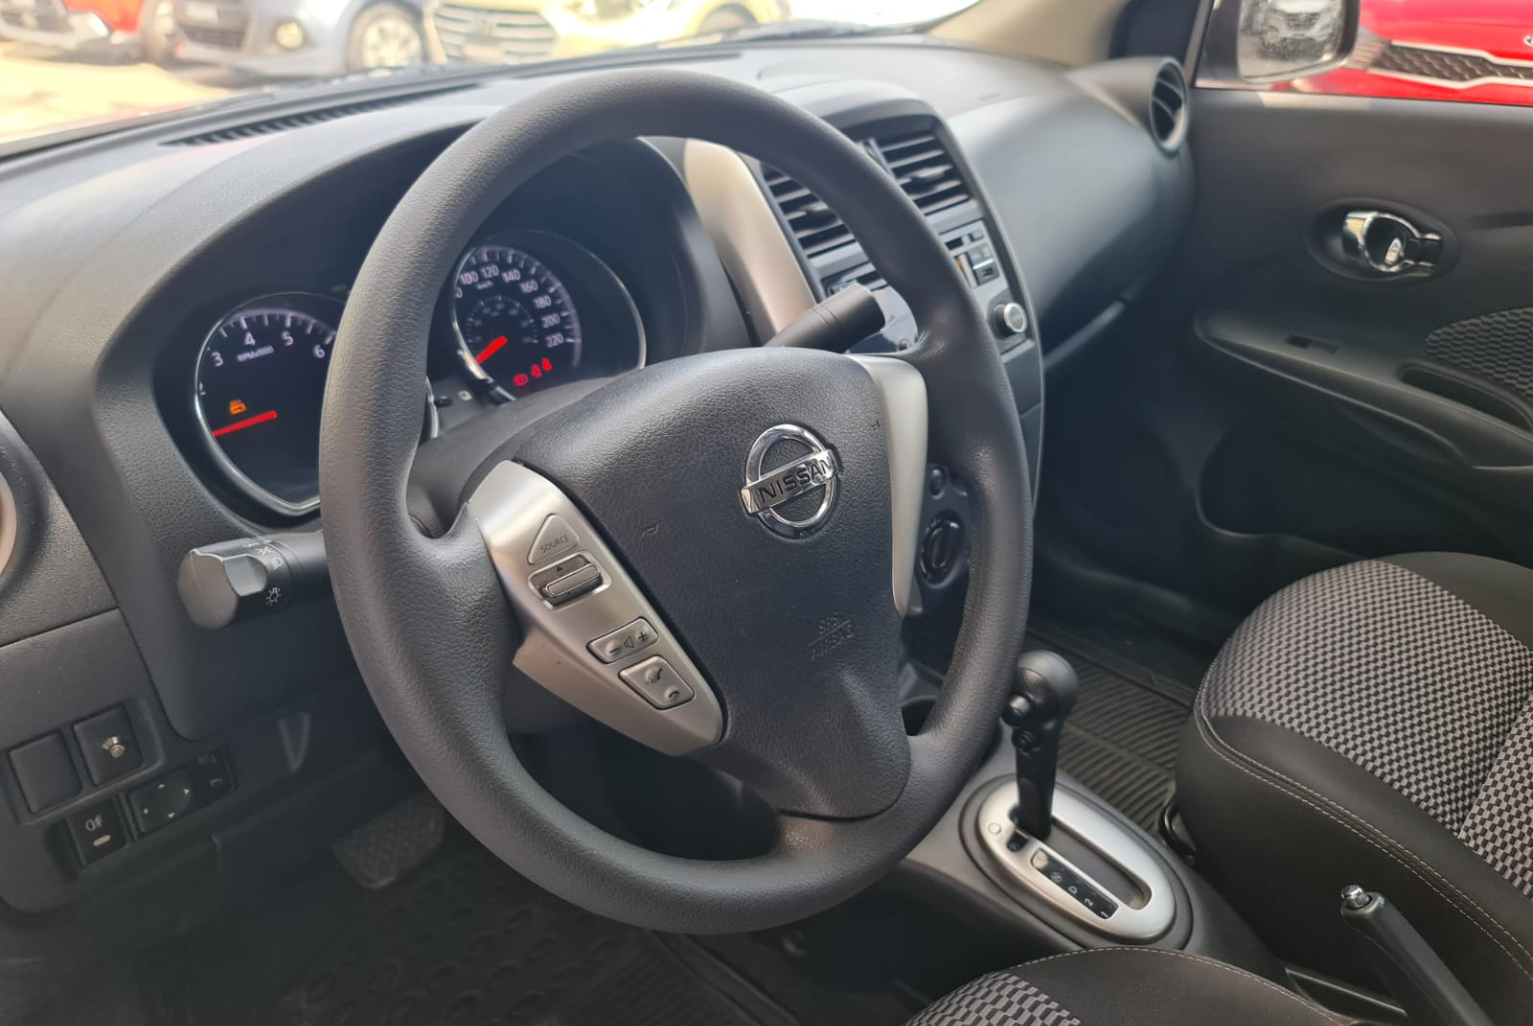 Nissan Versa 2018 Automático color Blanco, Imagen #7